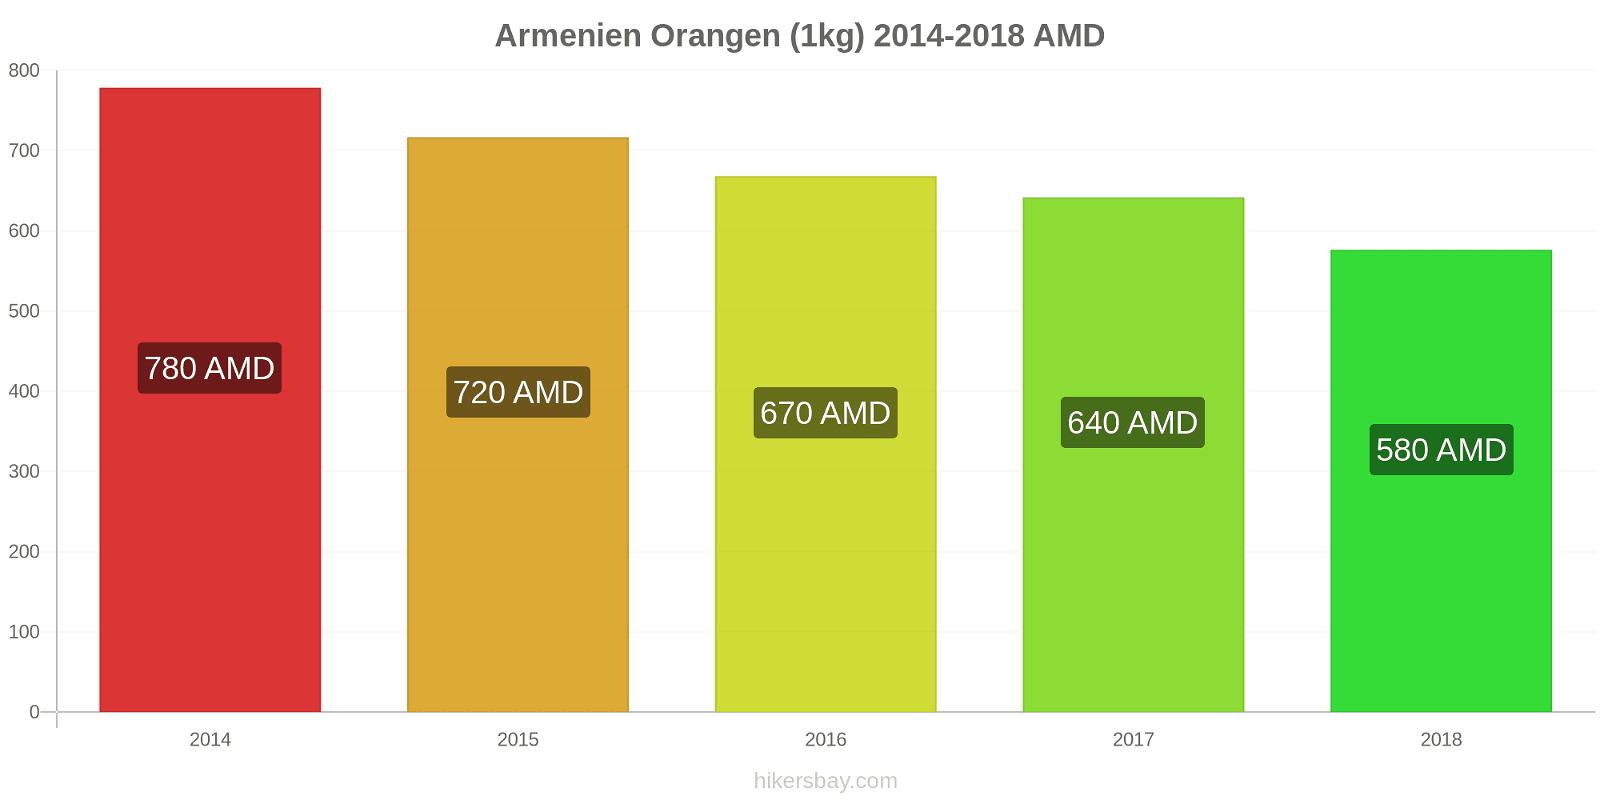 Armenien Preisänderungen Orangen (1kg) hikersbay.com